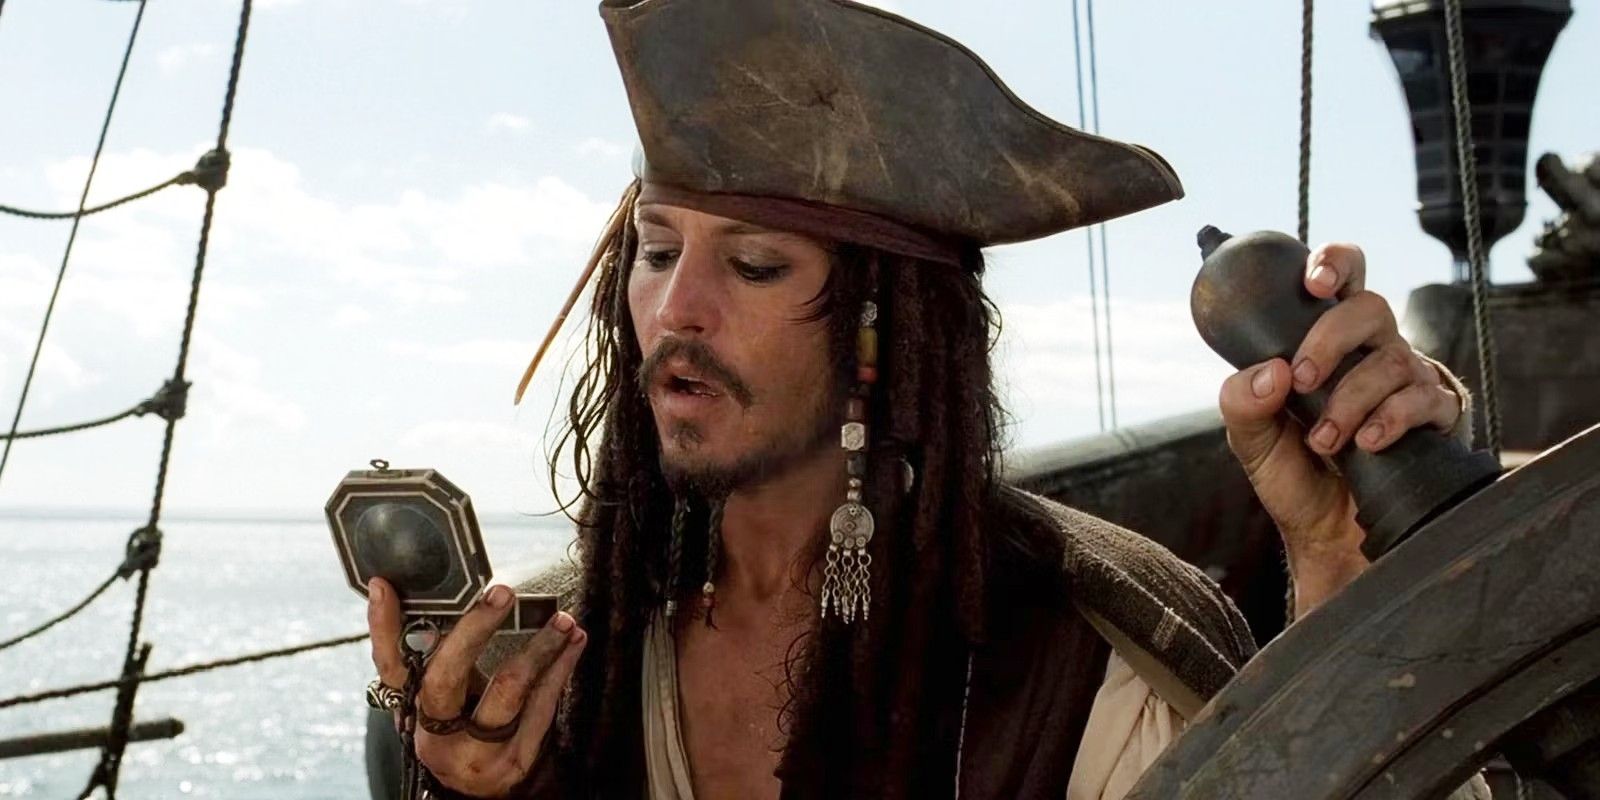 “No hay que esperar a ciertos actores”: Piratas del Caribe 6 reiniciará la franquicia